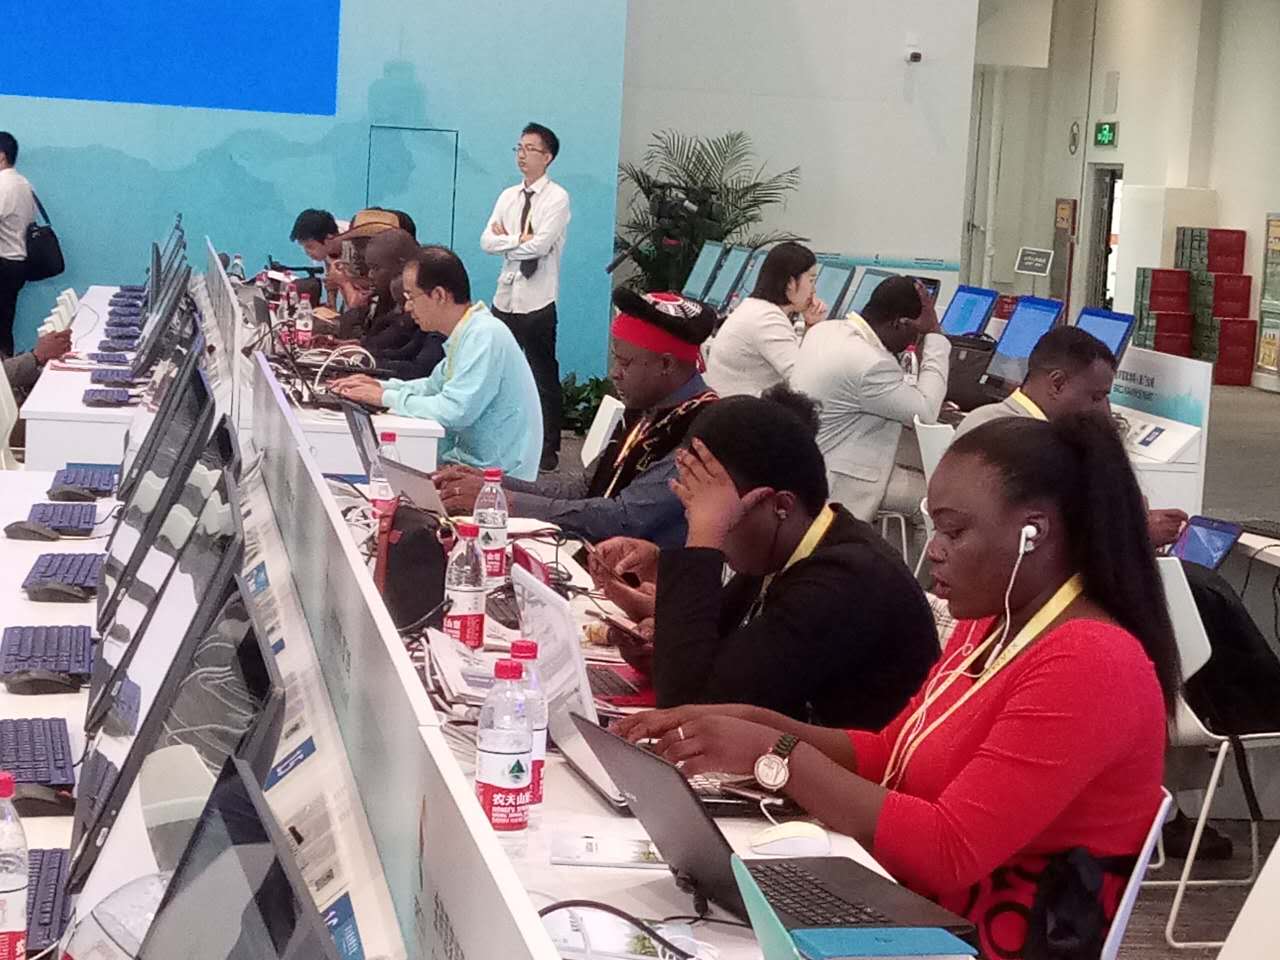 Des journalistes africains aux BRICS, une ouverture certaine et prometteuse au monde